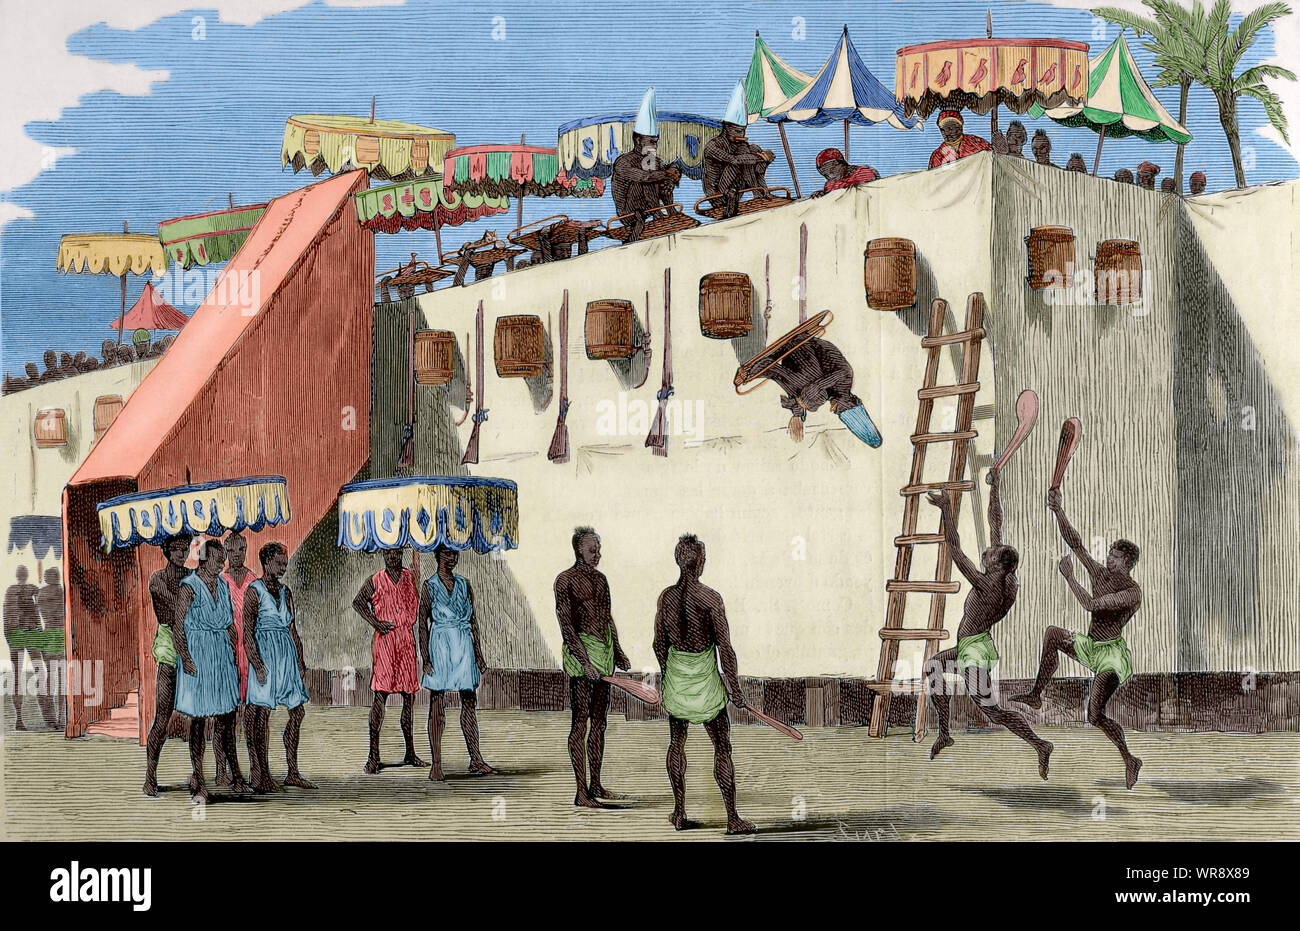 La douane annuel du Dahomey. La principale célébration annuelle dans le royaume de Dahomey (Bénin), actuellement tenue à la capitale, Abomey, au début de l'automne comme un hommage à l'esprits invisibles. A cette époque, les taxes ont été recueillies, le prix a été fixé en monnaie actuelle, les commandants militaires et civils ont été nommés, les bonnes actions sont récompensées et les criminels étaient sévèrement punis, à partir de laquelle les victimes destinées à la douane annuel ont été choisis. Sur le jour où ils figuraient sur une plate-forme haute et, dans des corbeilles, ont été jetés dans le vide, mourir décapités par les bourreaux. Gravure de Capuz. La J Banque D'Images